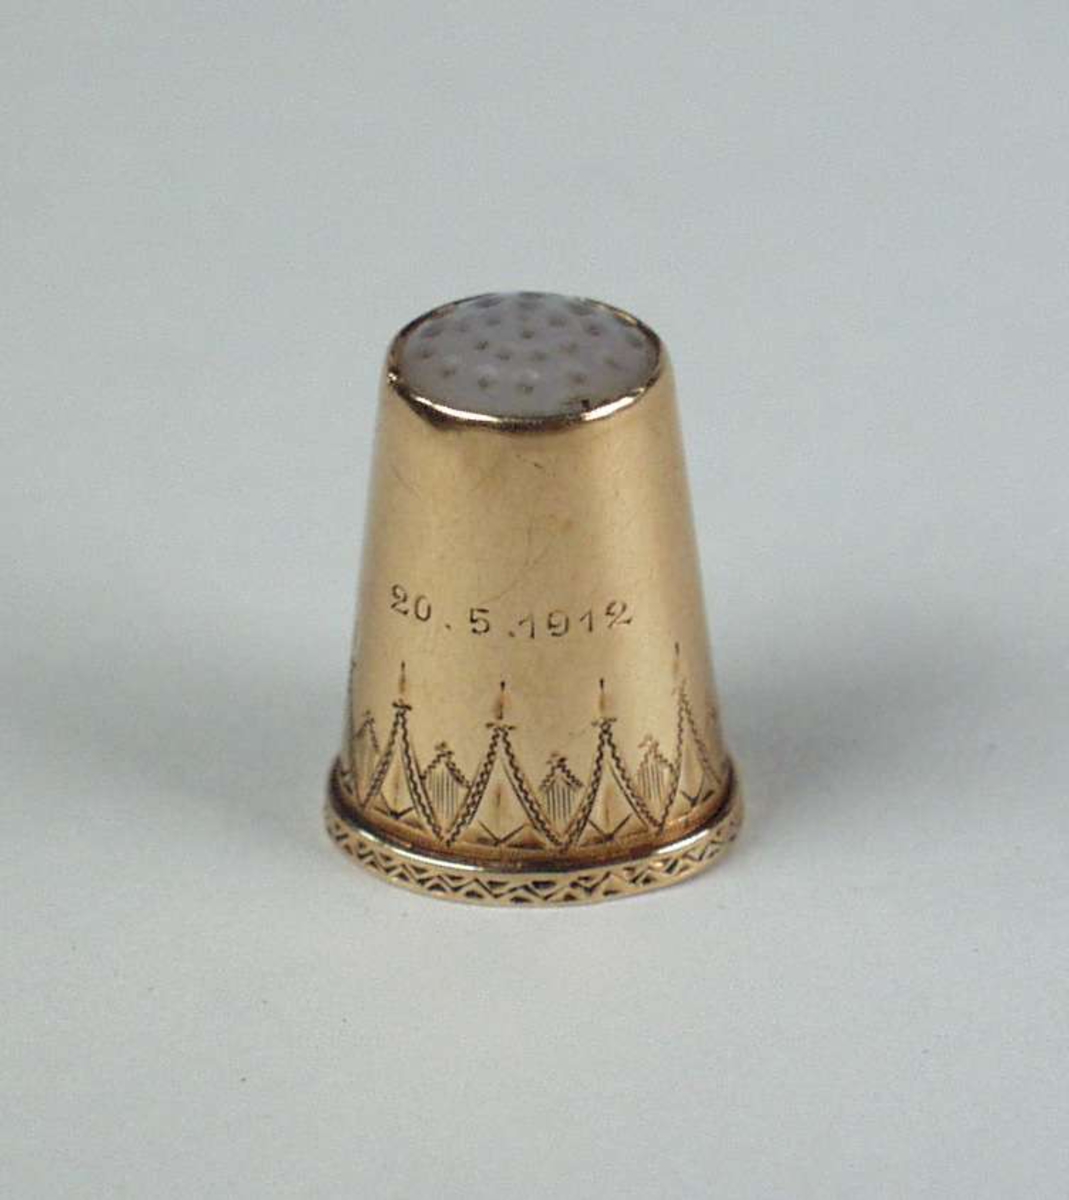 Fingerbøl av gull med topp av perlemor. SUs initialer og datoen 20.5.1912 er inngravert. Fingerbølet har gravert dekor.